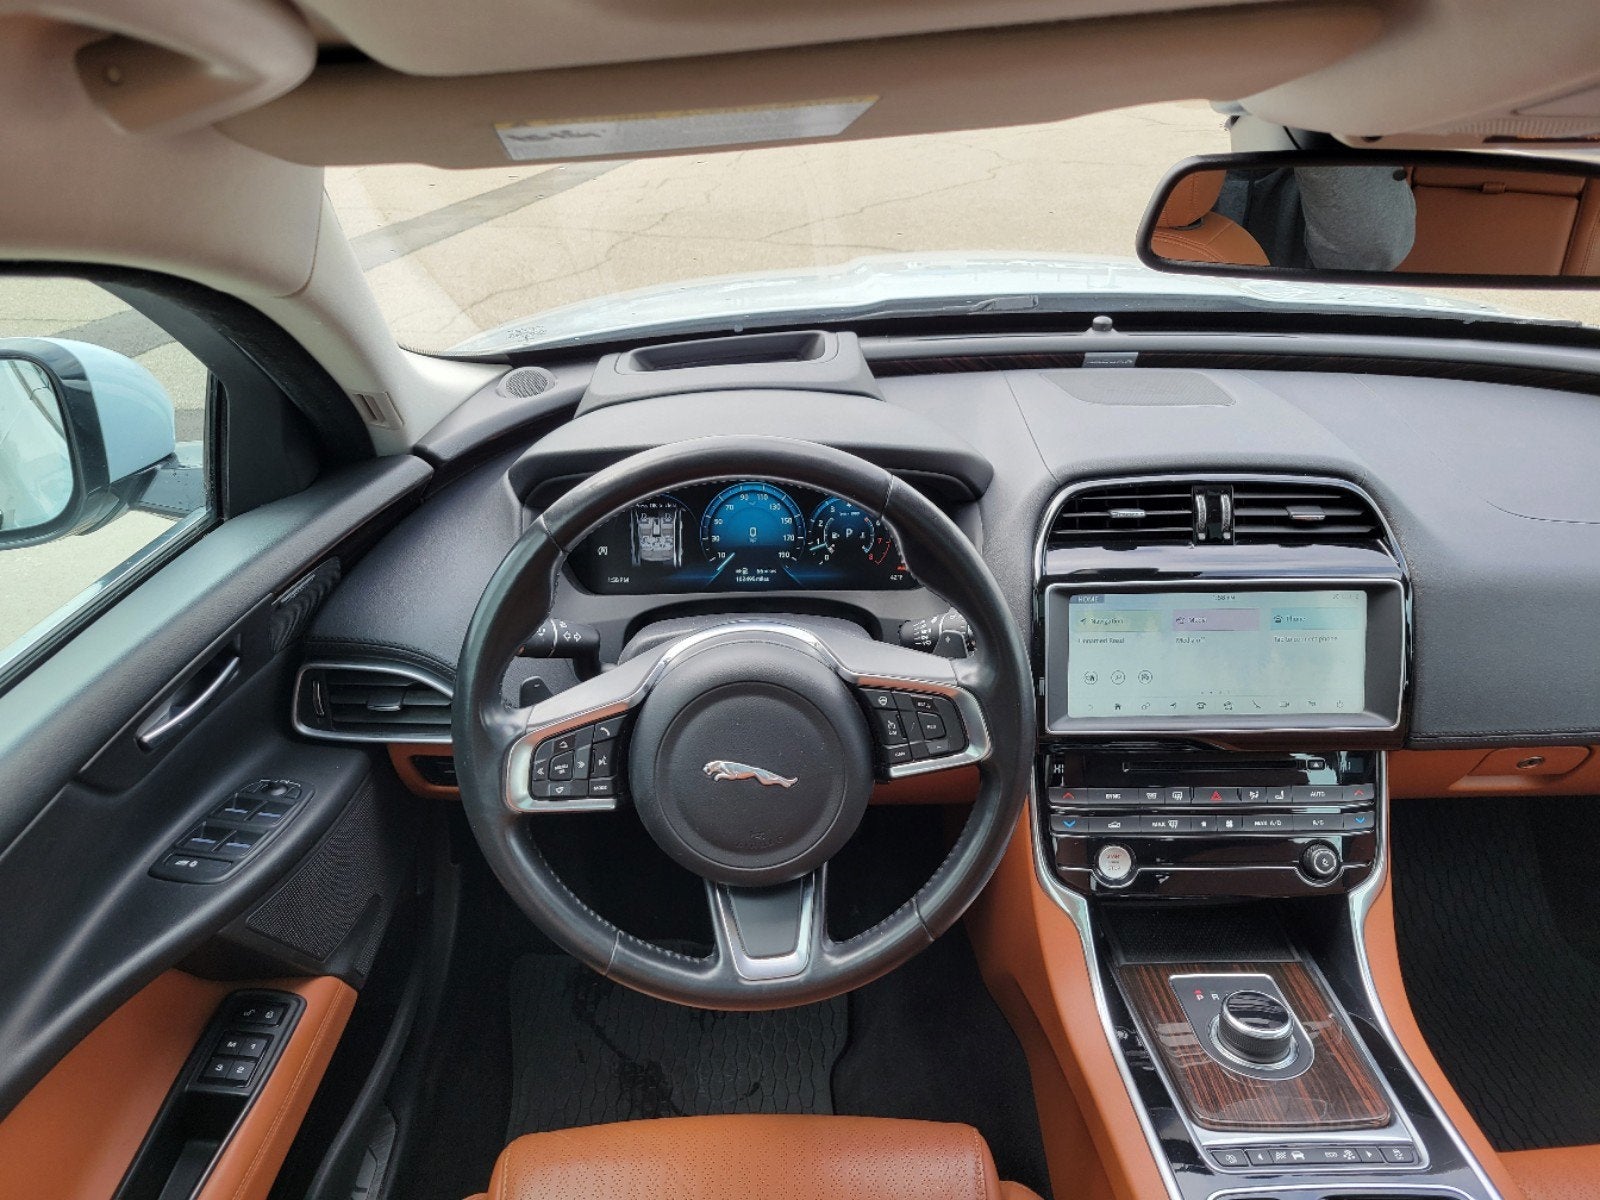 Used 2018 Jaguar XE Portfolio Limited Edition with VIN SAJAN4EVXJCP17038 for sale in Jordan, Minnesota